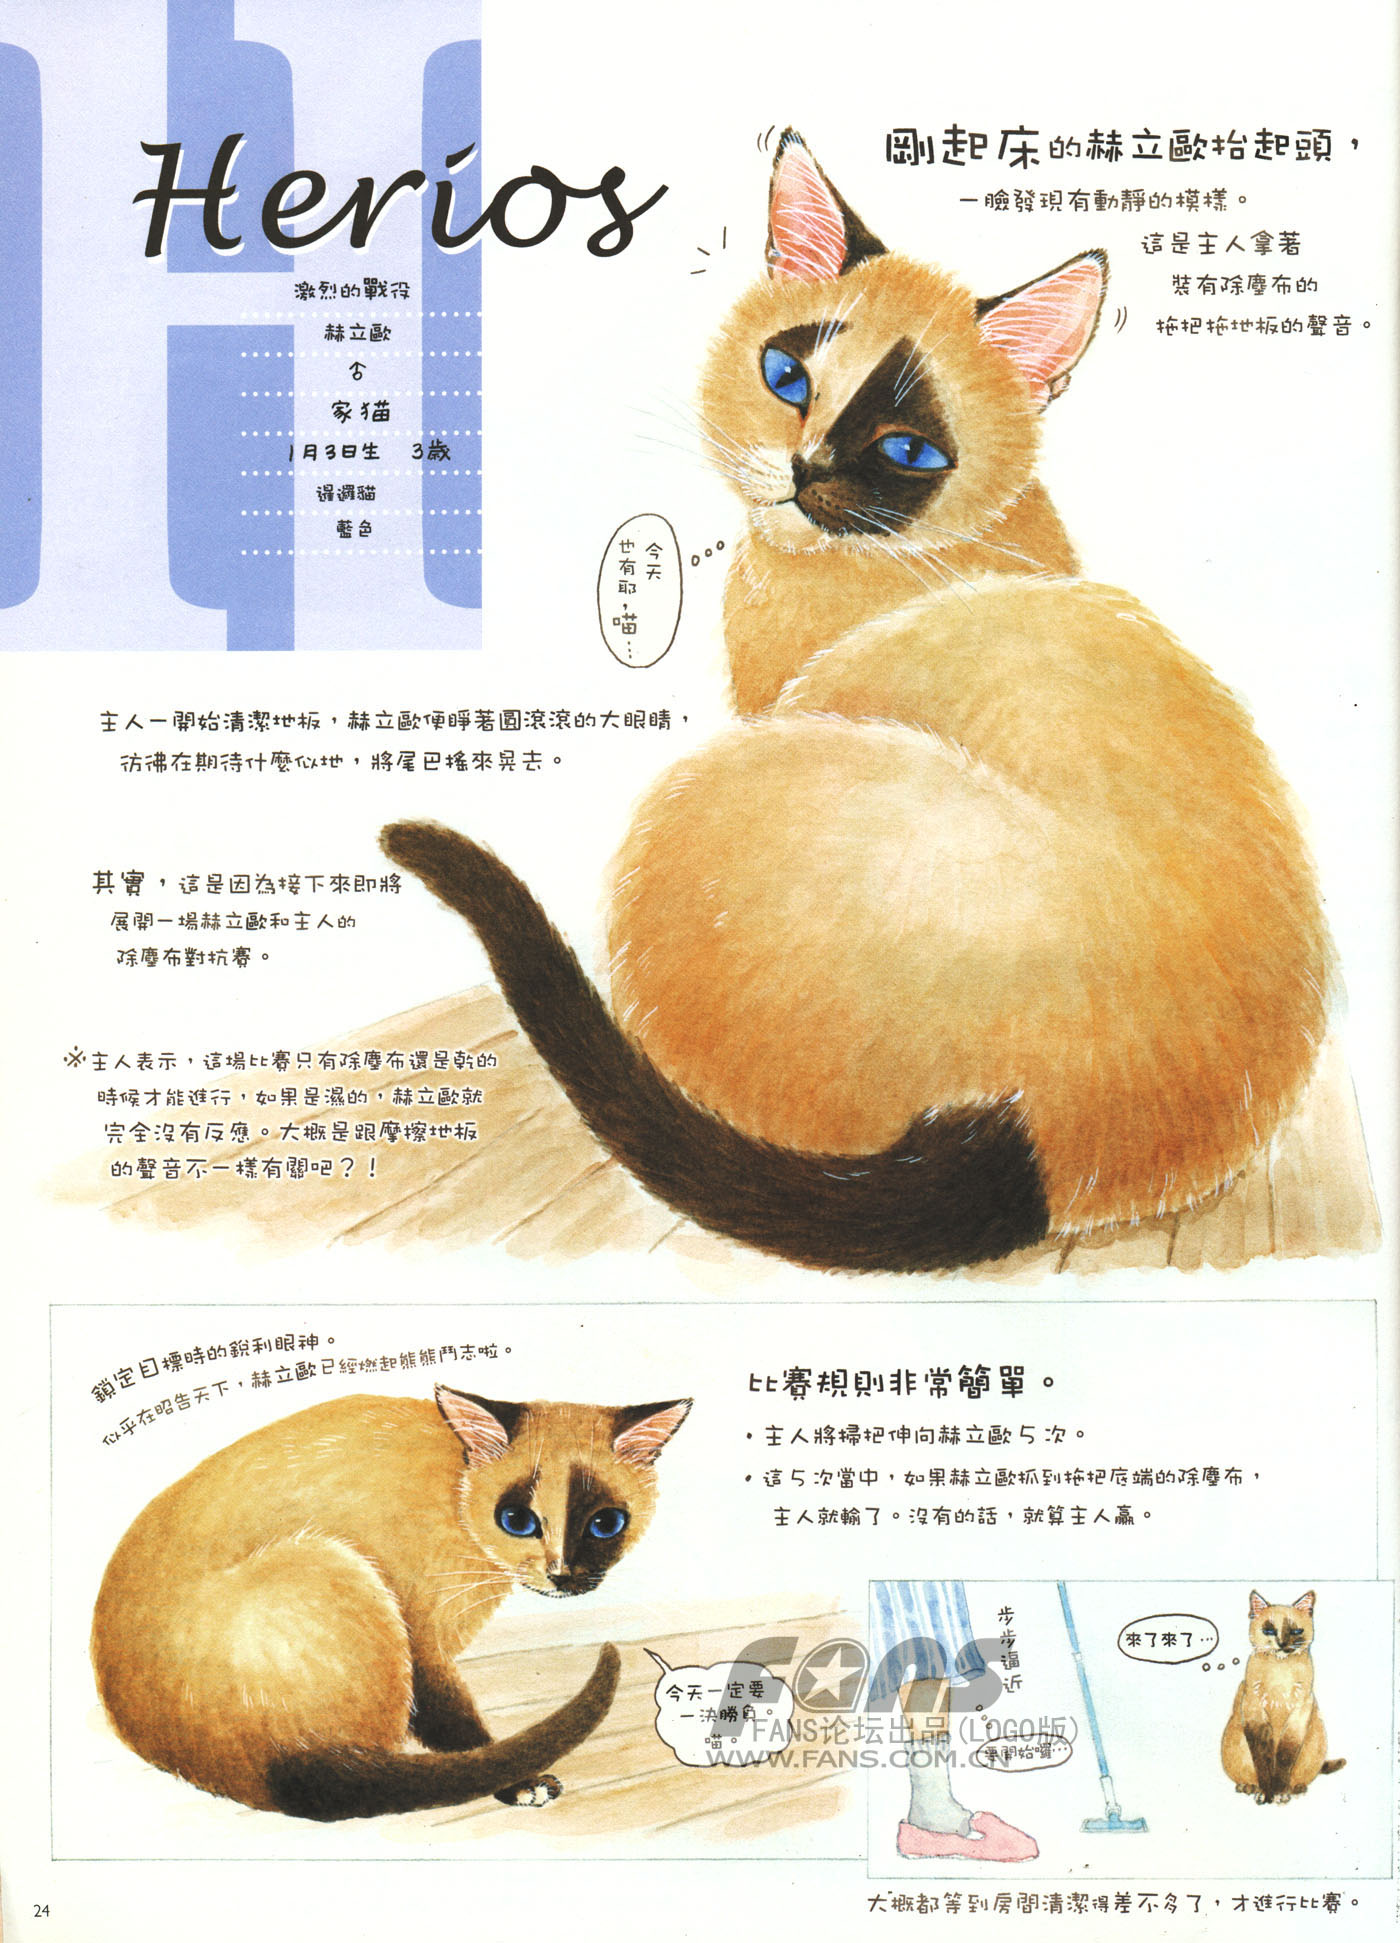 猫漫画图片大全(7)-猫猫萌图-屈阿零可爱屋